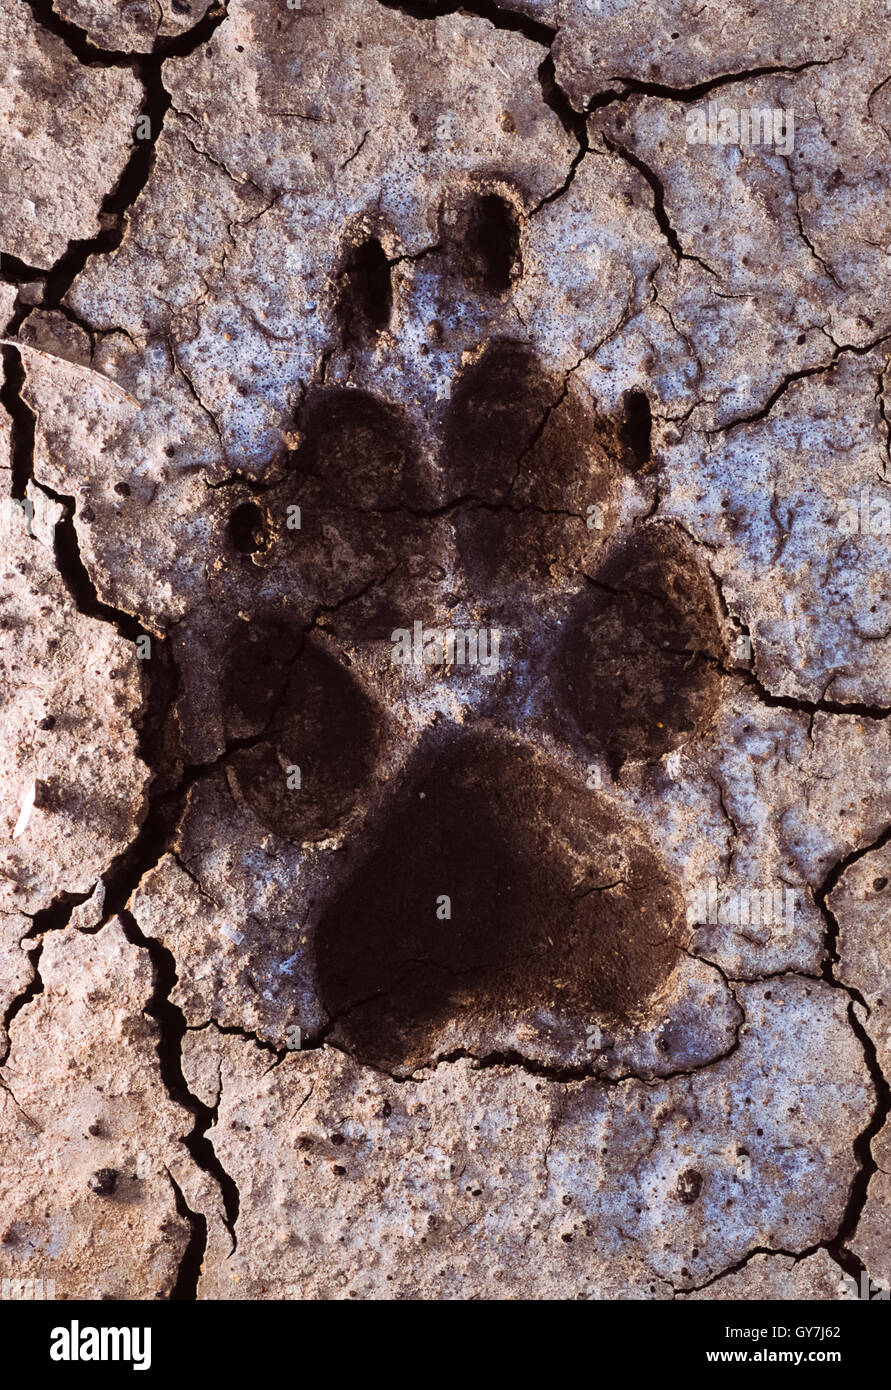 Loup indien, (Canis lupus pallipes ou canis indica),empreintes dans la boue sèche, Blackbuck National Park, Gujerat, Inde Banque D'Images